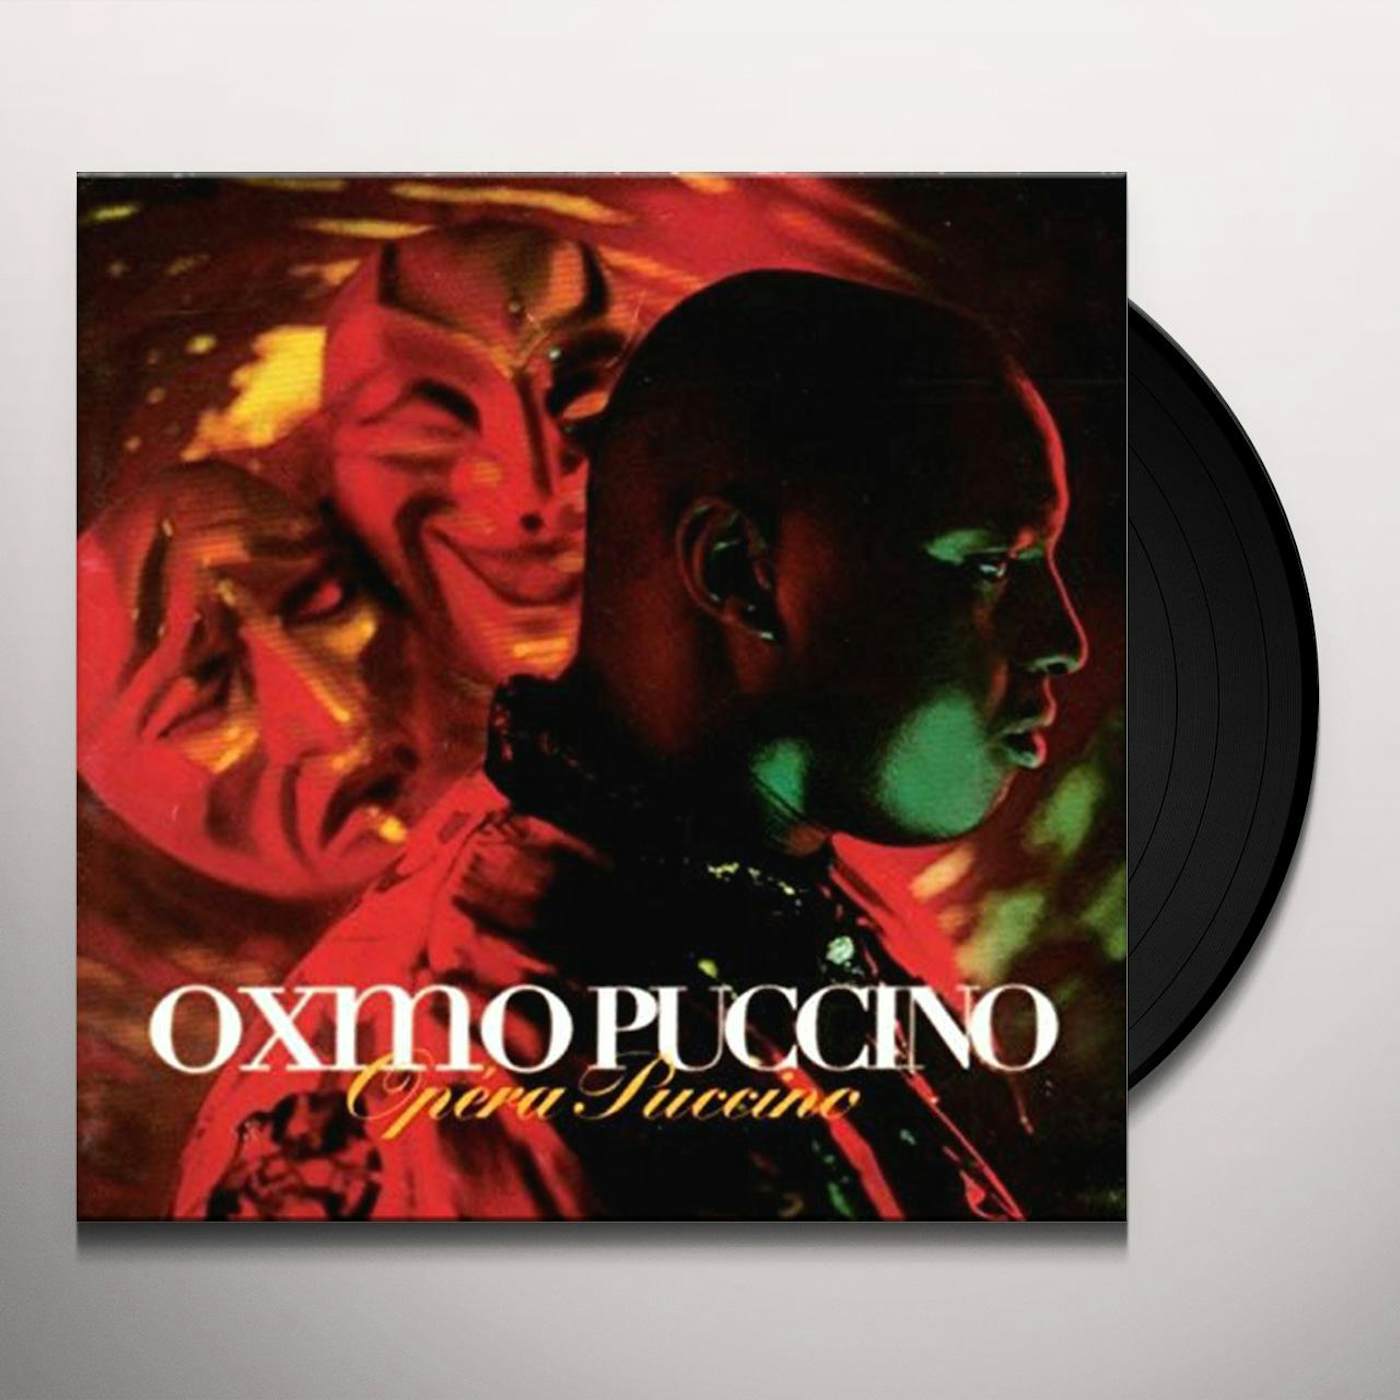 Oxmo Puccino OPERA PUCCIMO Vinyl Record